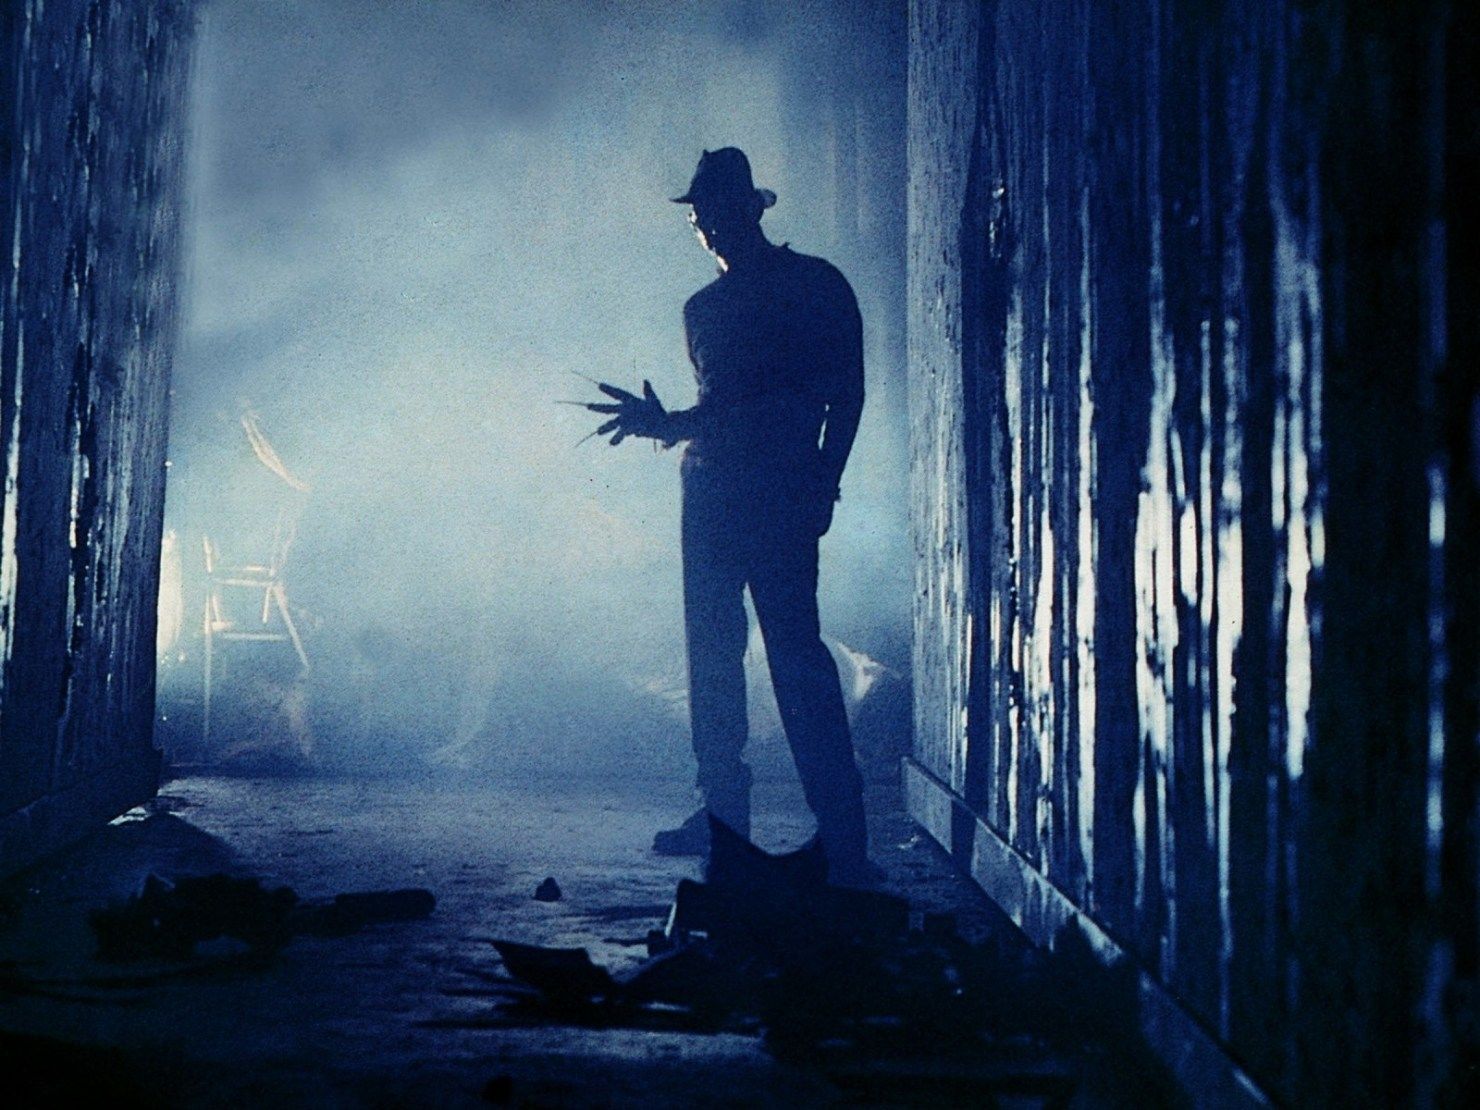 Robert-Englund-as-Freddy-Krueger-in-A-Nightmare-on-Elm-Street-1984-1